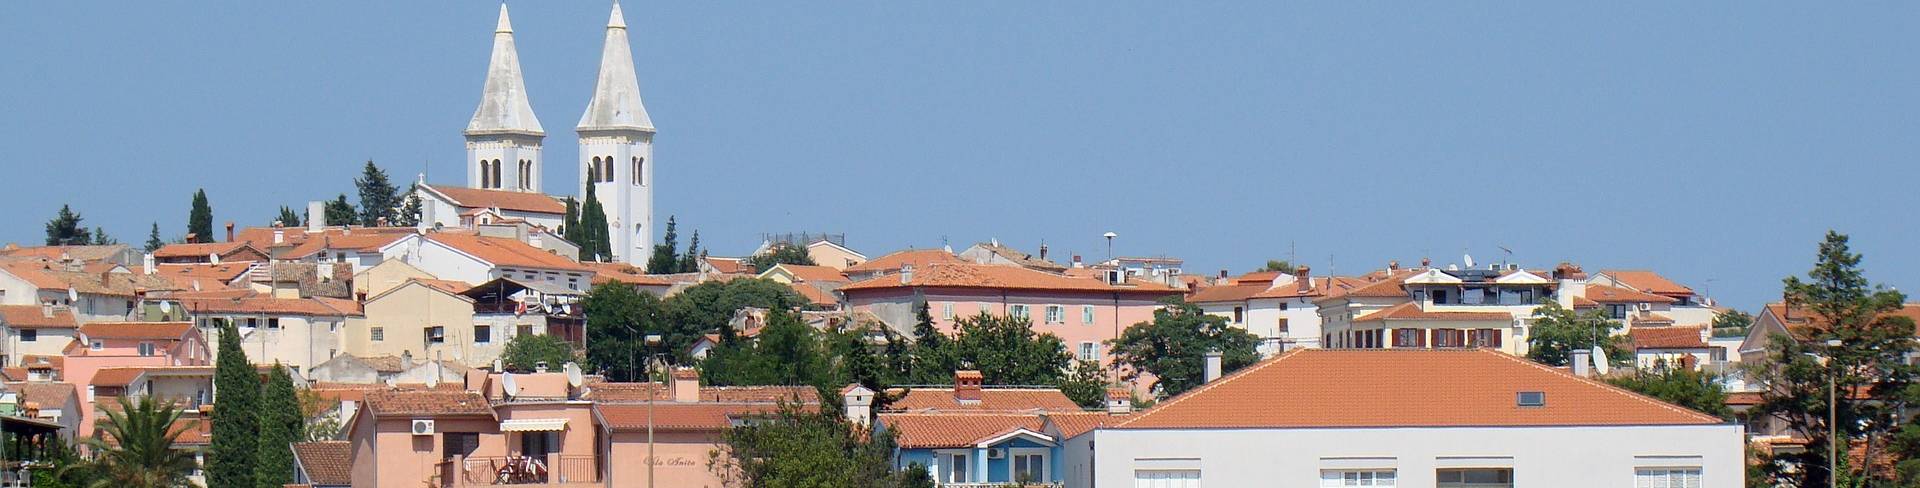 Медулин - город в Хорватии